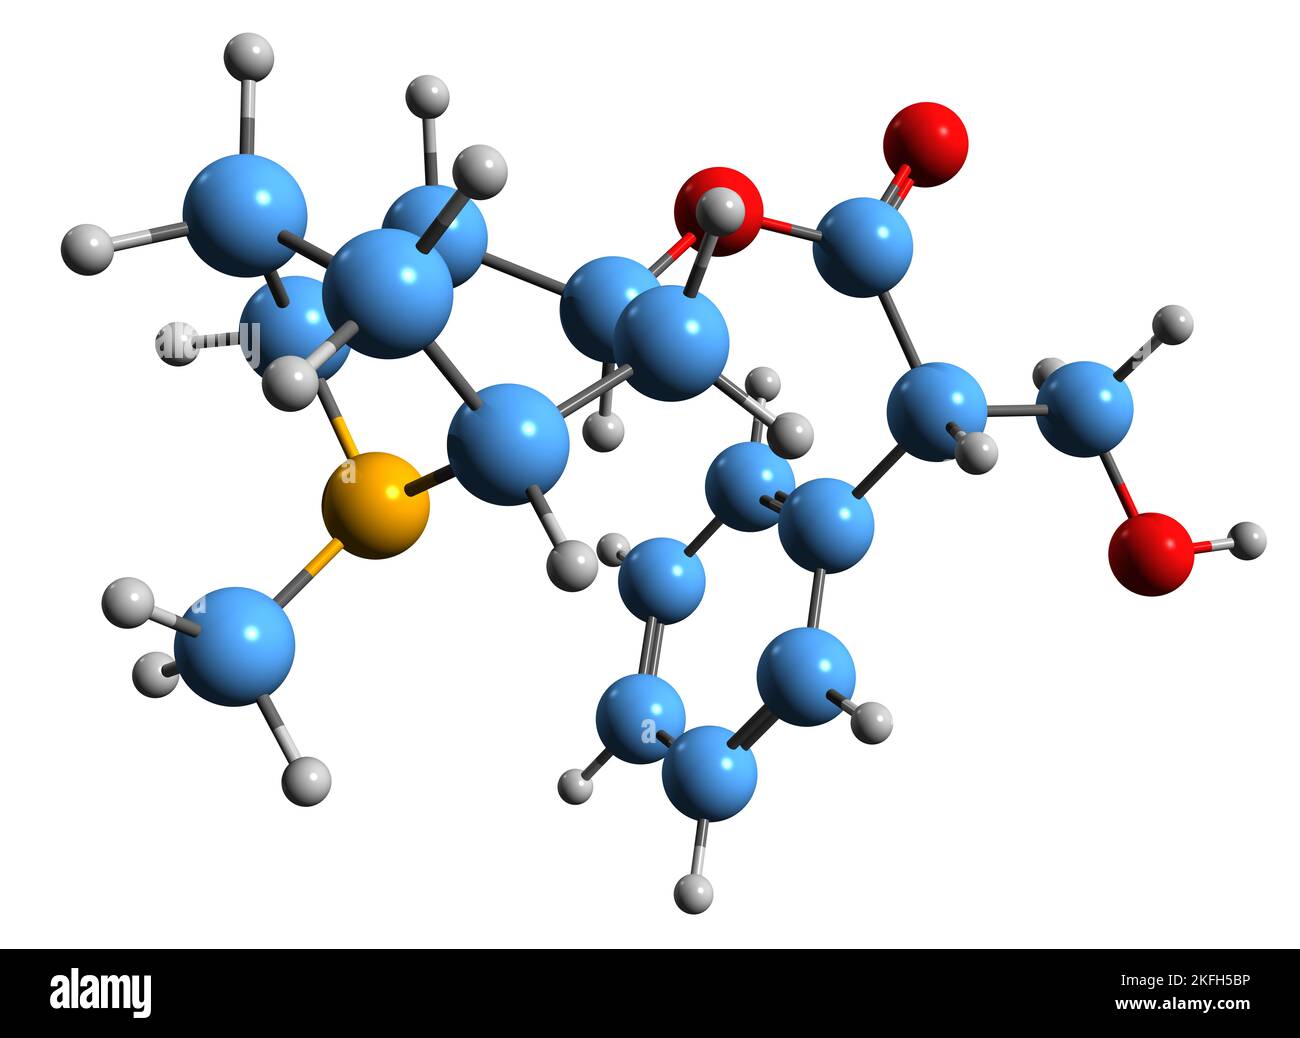 3D Bild der Skelettformel von Hyoscyamin - molekulare chemische Struktur des Tropan-Alkaloid-Daturins auf weißem Hintergrund isoliert Stockfoto